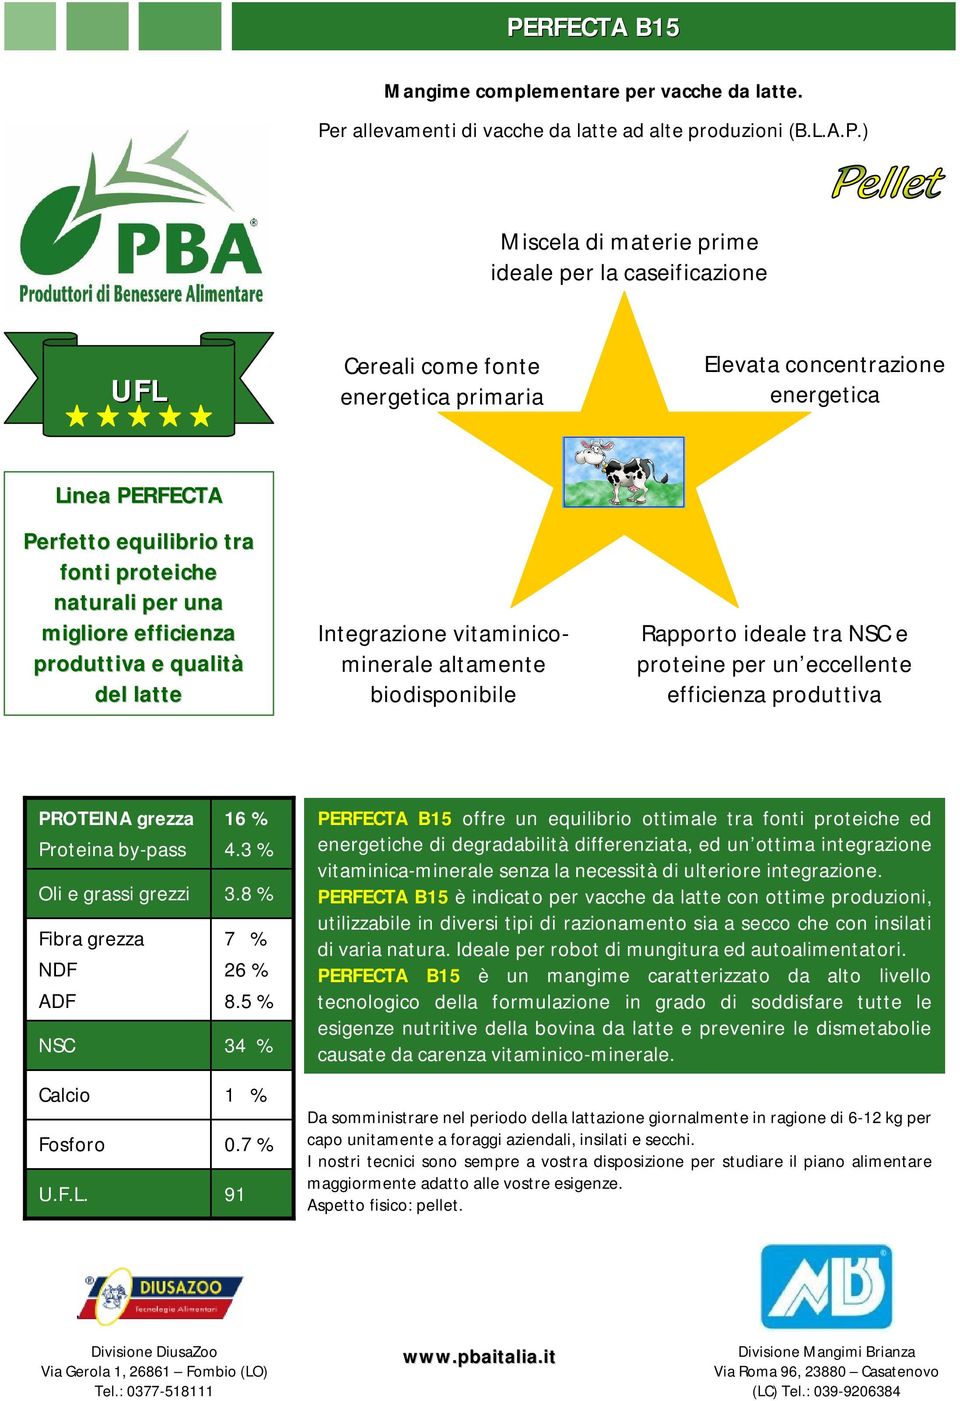 vitaminicominerale altamente biodisponibile Rapporto ideale tra e proteine per un eccellente efficienza produttiva 16 % 4.3 % 3.8 % 7 % 26 % 8.5 % 34 % 1 % 0.